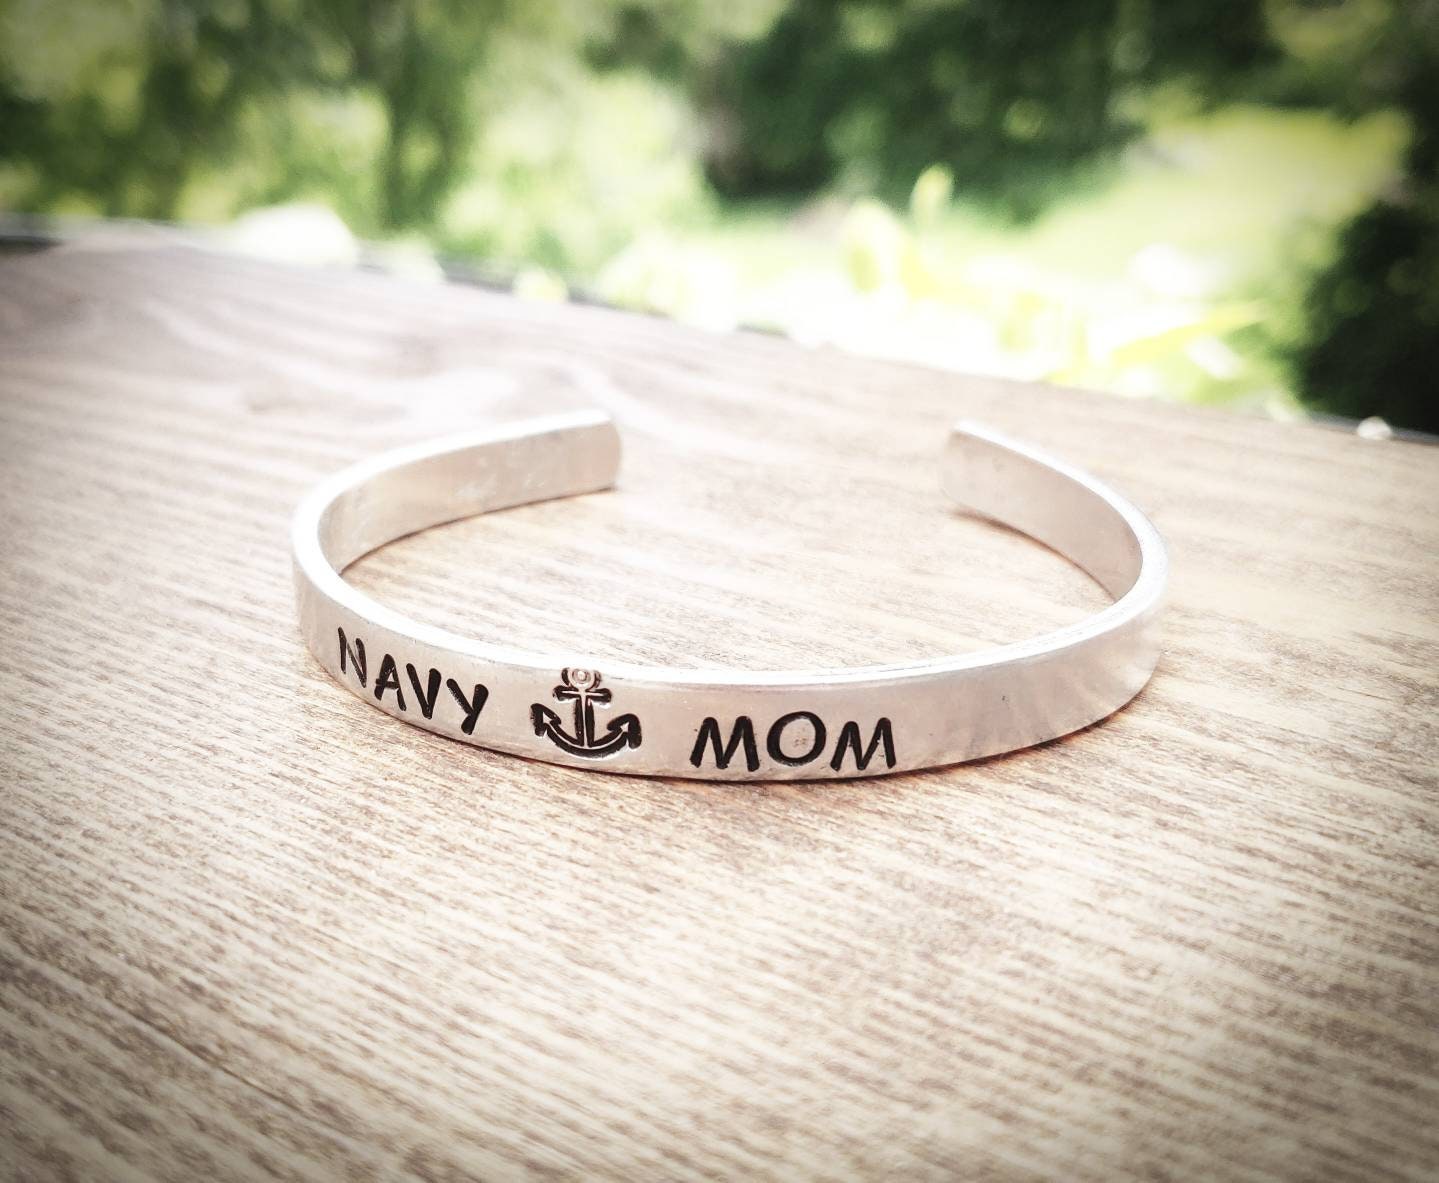 Navy Mom Bracelet, Navy Mom Jewelry, Navy Mom Gift, Gift for Navy Mom, Military Mom bracelet, Military Mom Gift, Military Mom Bracelet